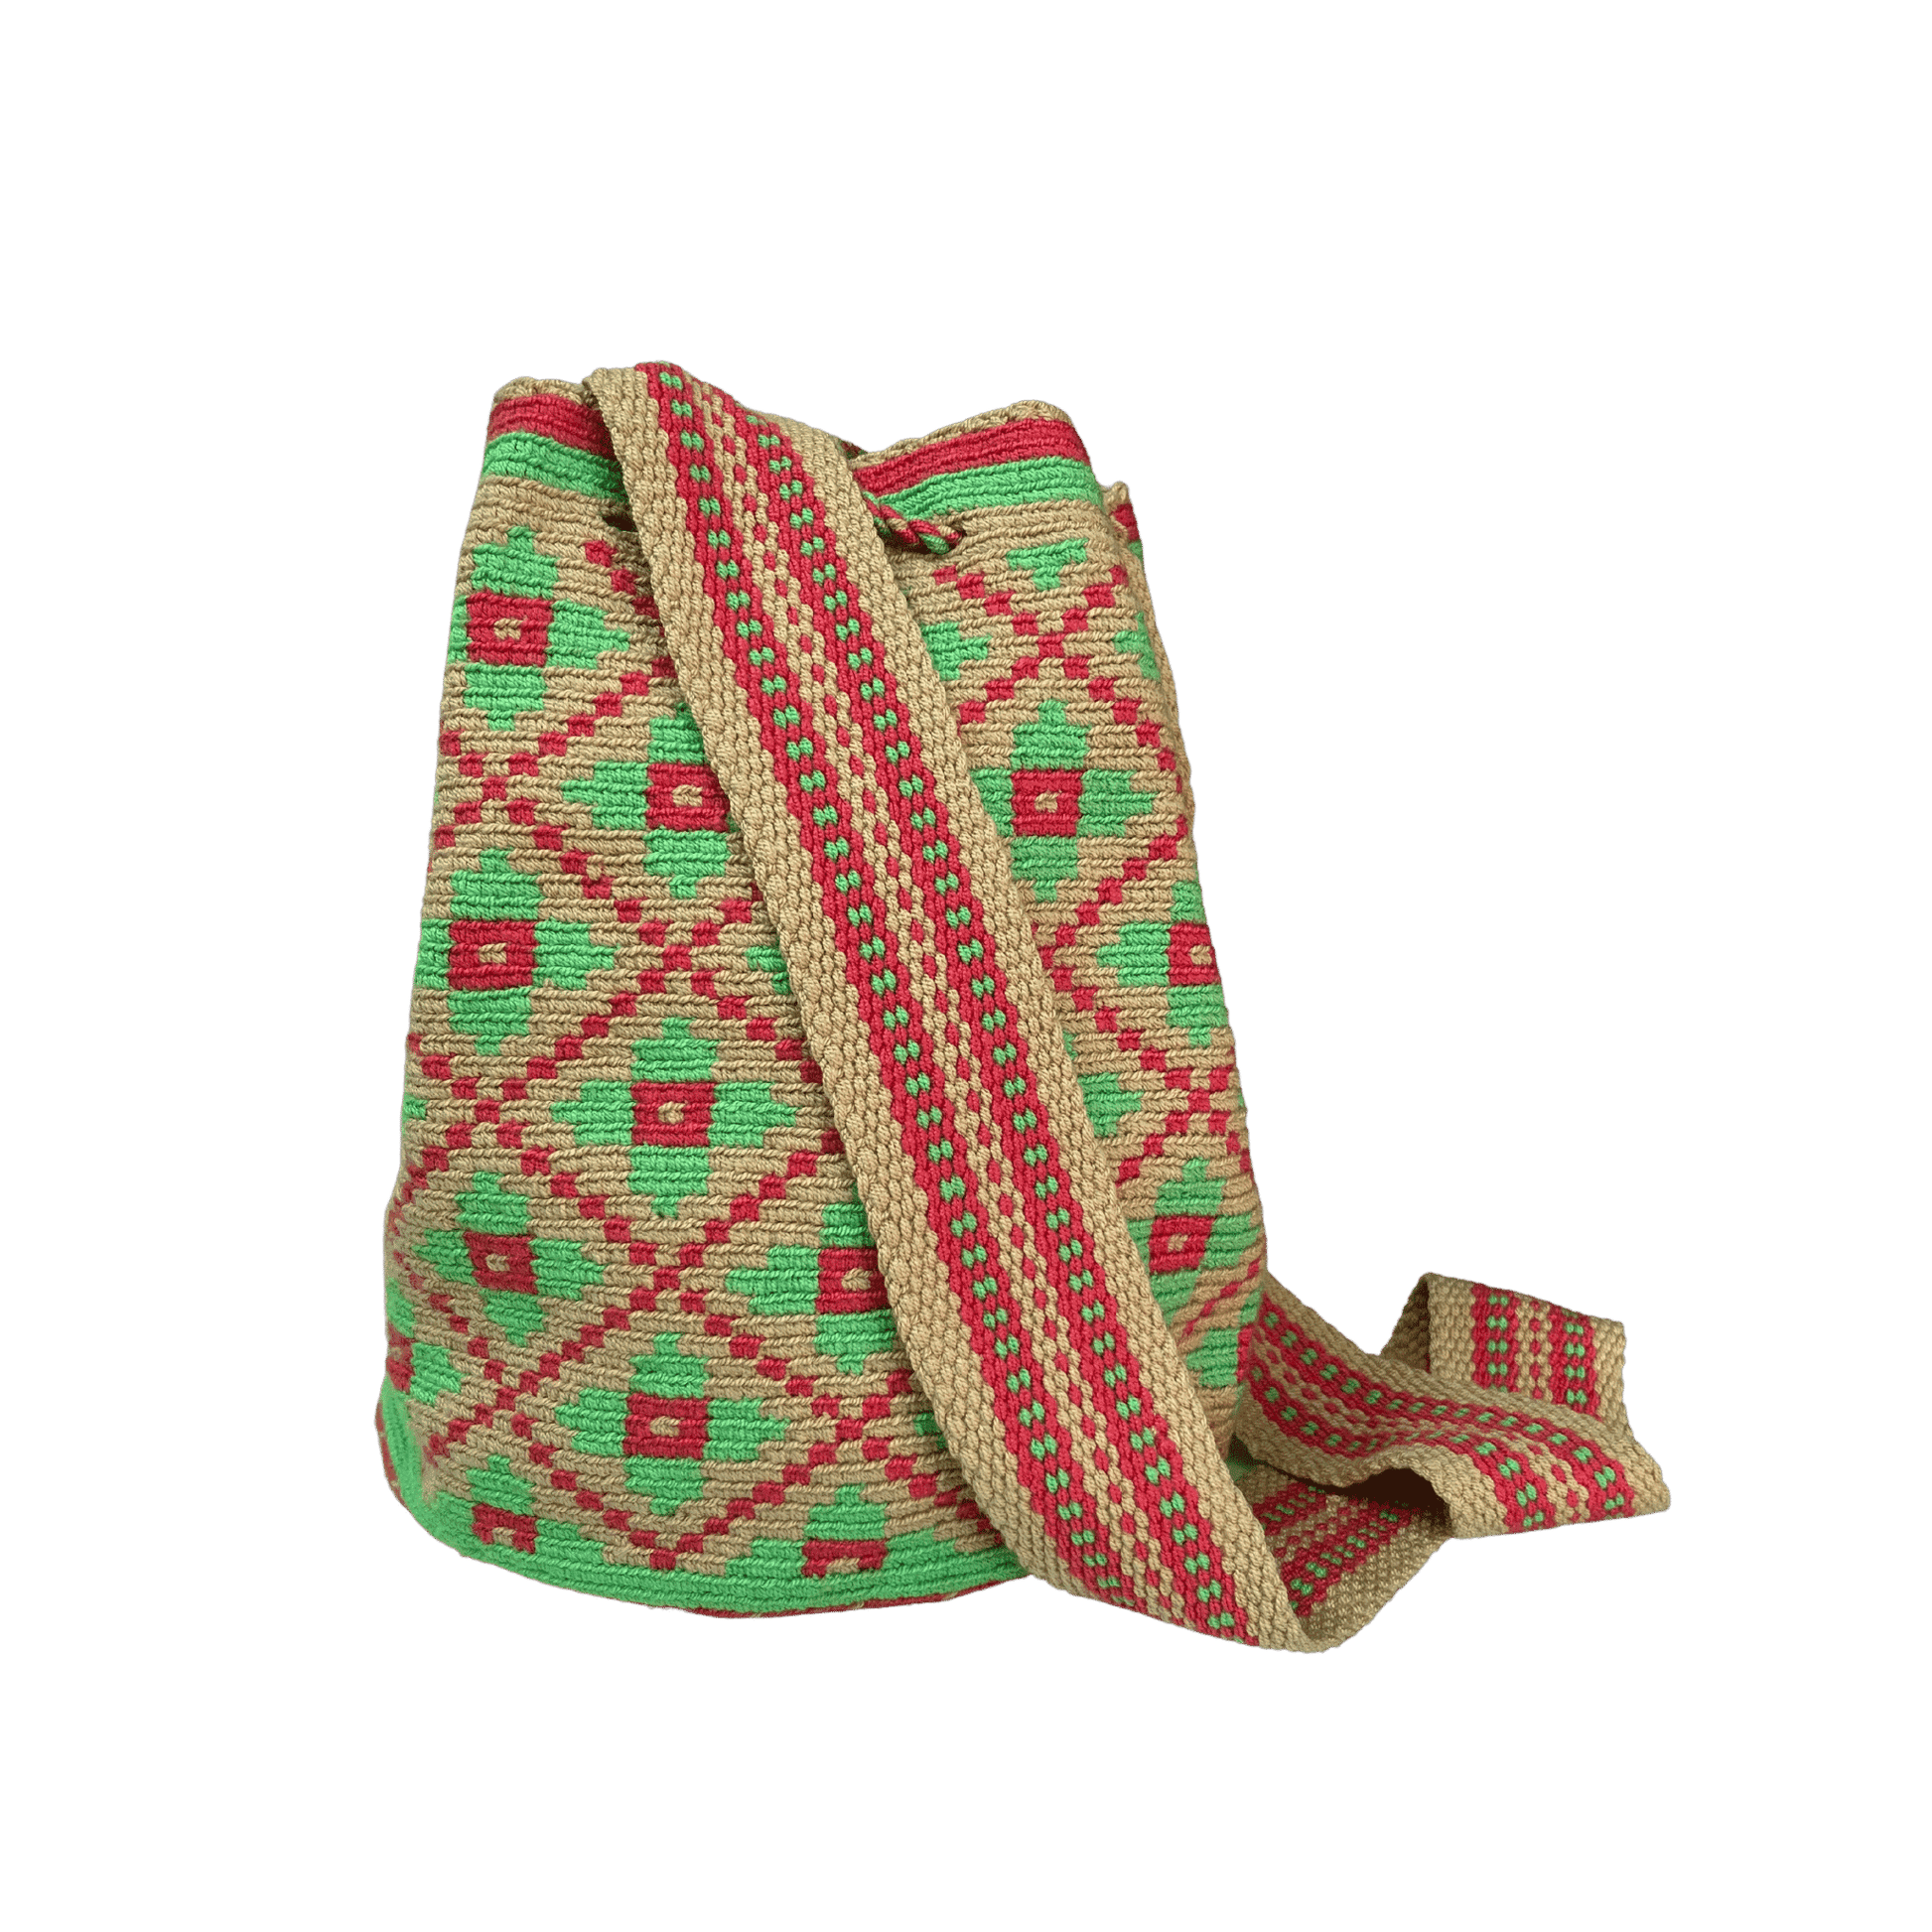 Mochila wayuu tejida a una hebra con diseño de flores en colores rojo y verde